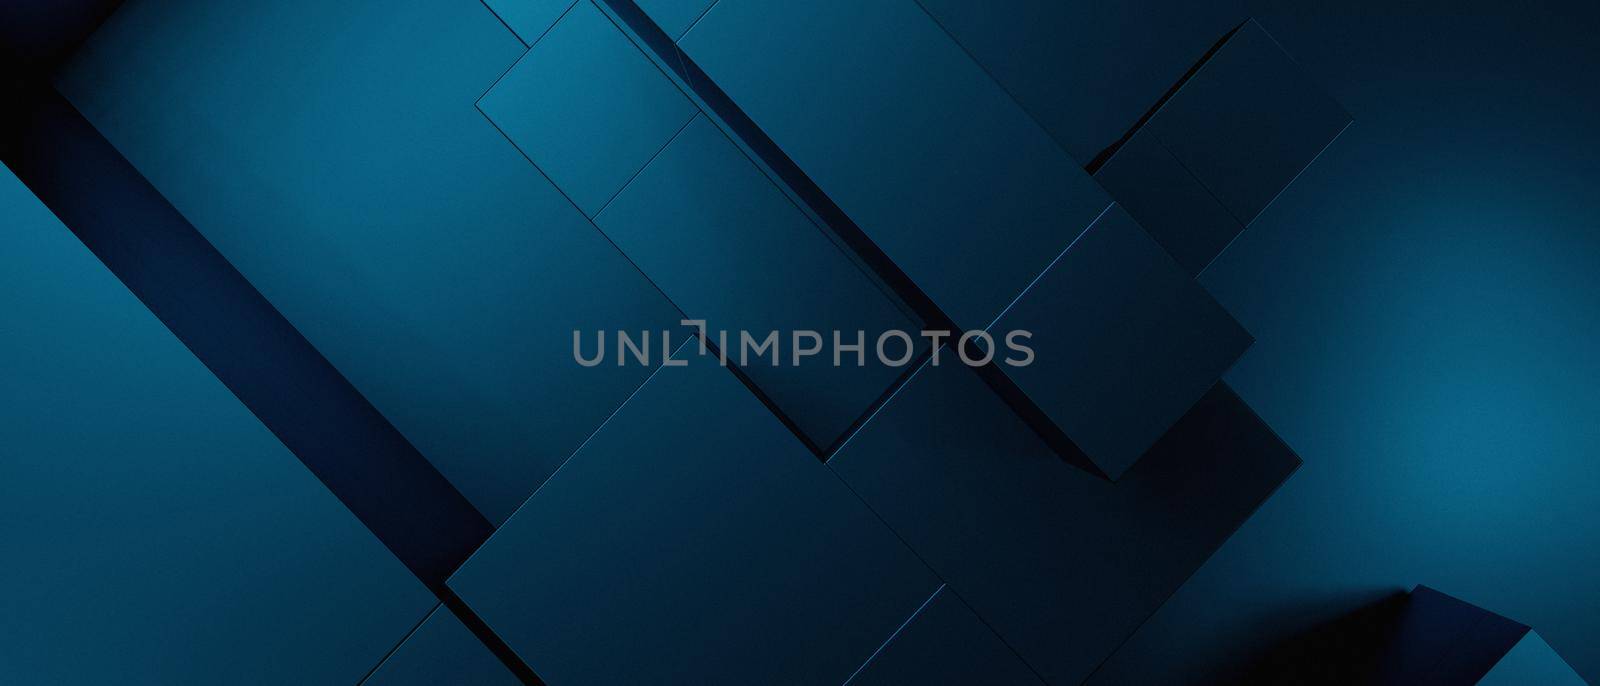 Abstract Metallic 3D Blocks Cubes Modern Navy Blue Banner Background Wallpaper 3D Render